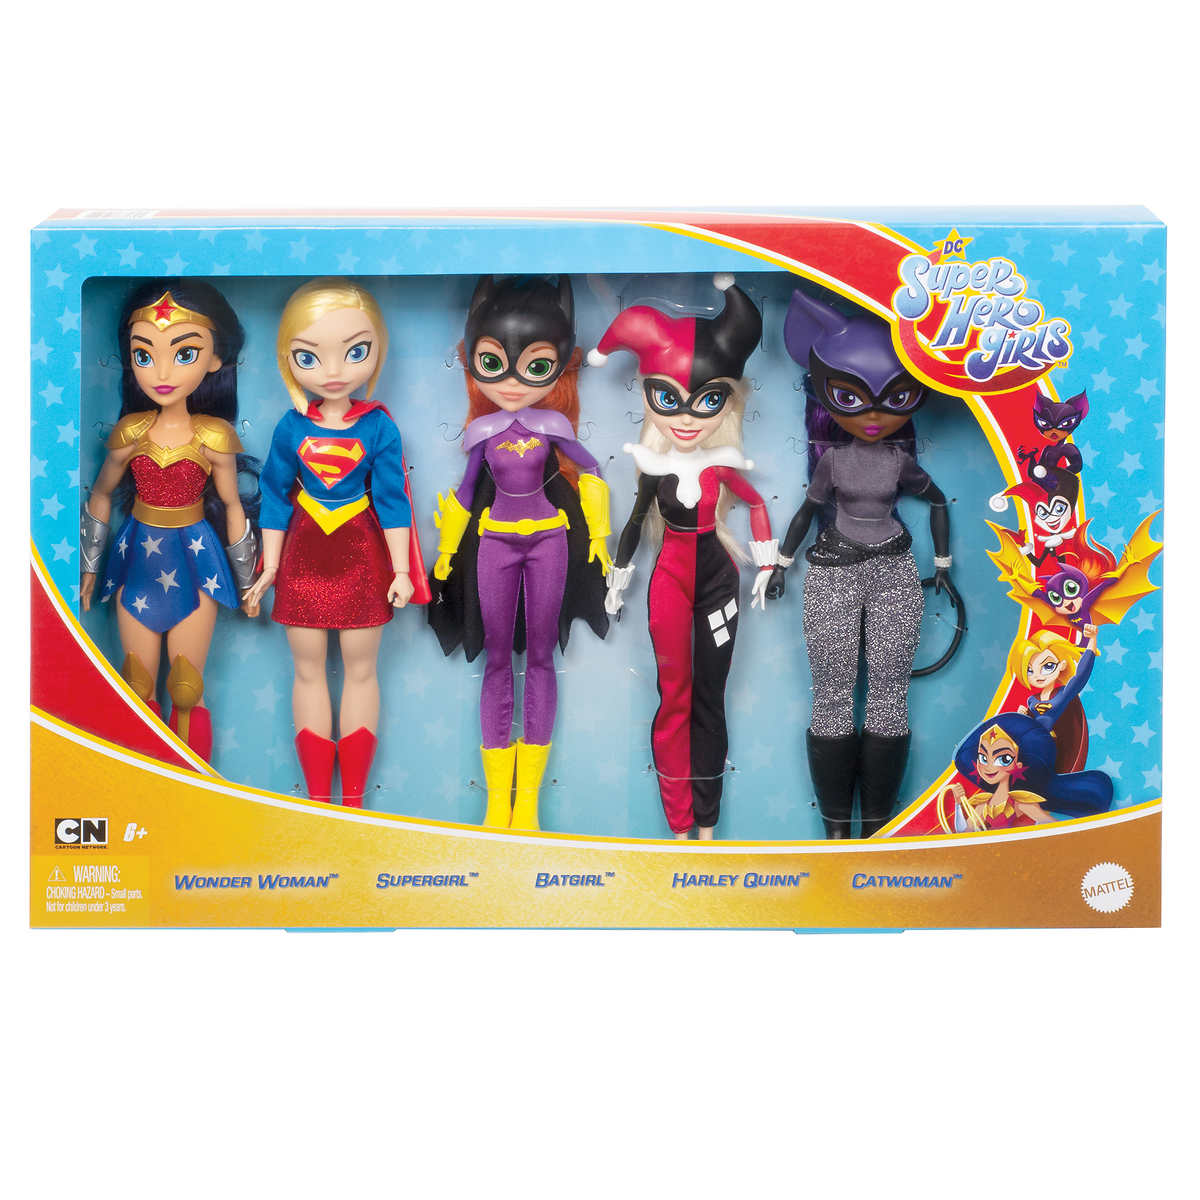 DC Super Hero Girls Hero Action Harley Quinn Doll 